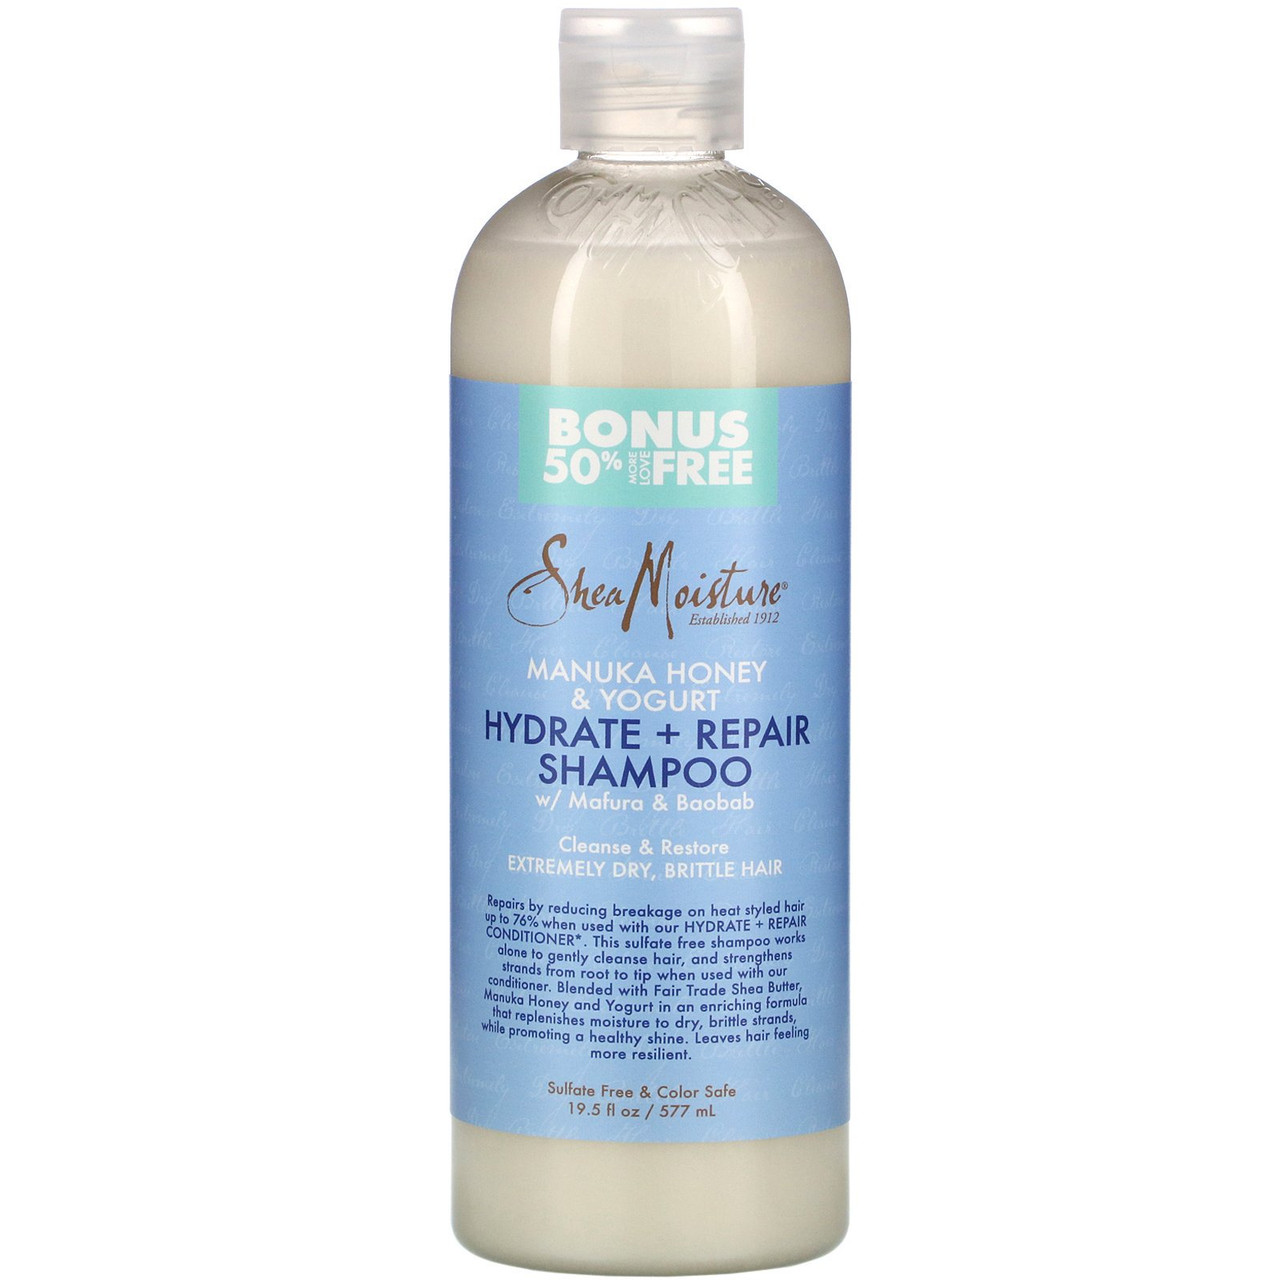 Shea Moisture Manuka Honey & Yogurt Hydrate+Repair Shampoo 3.2oz